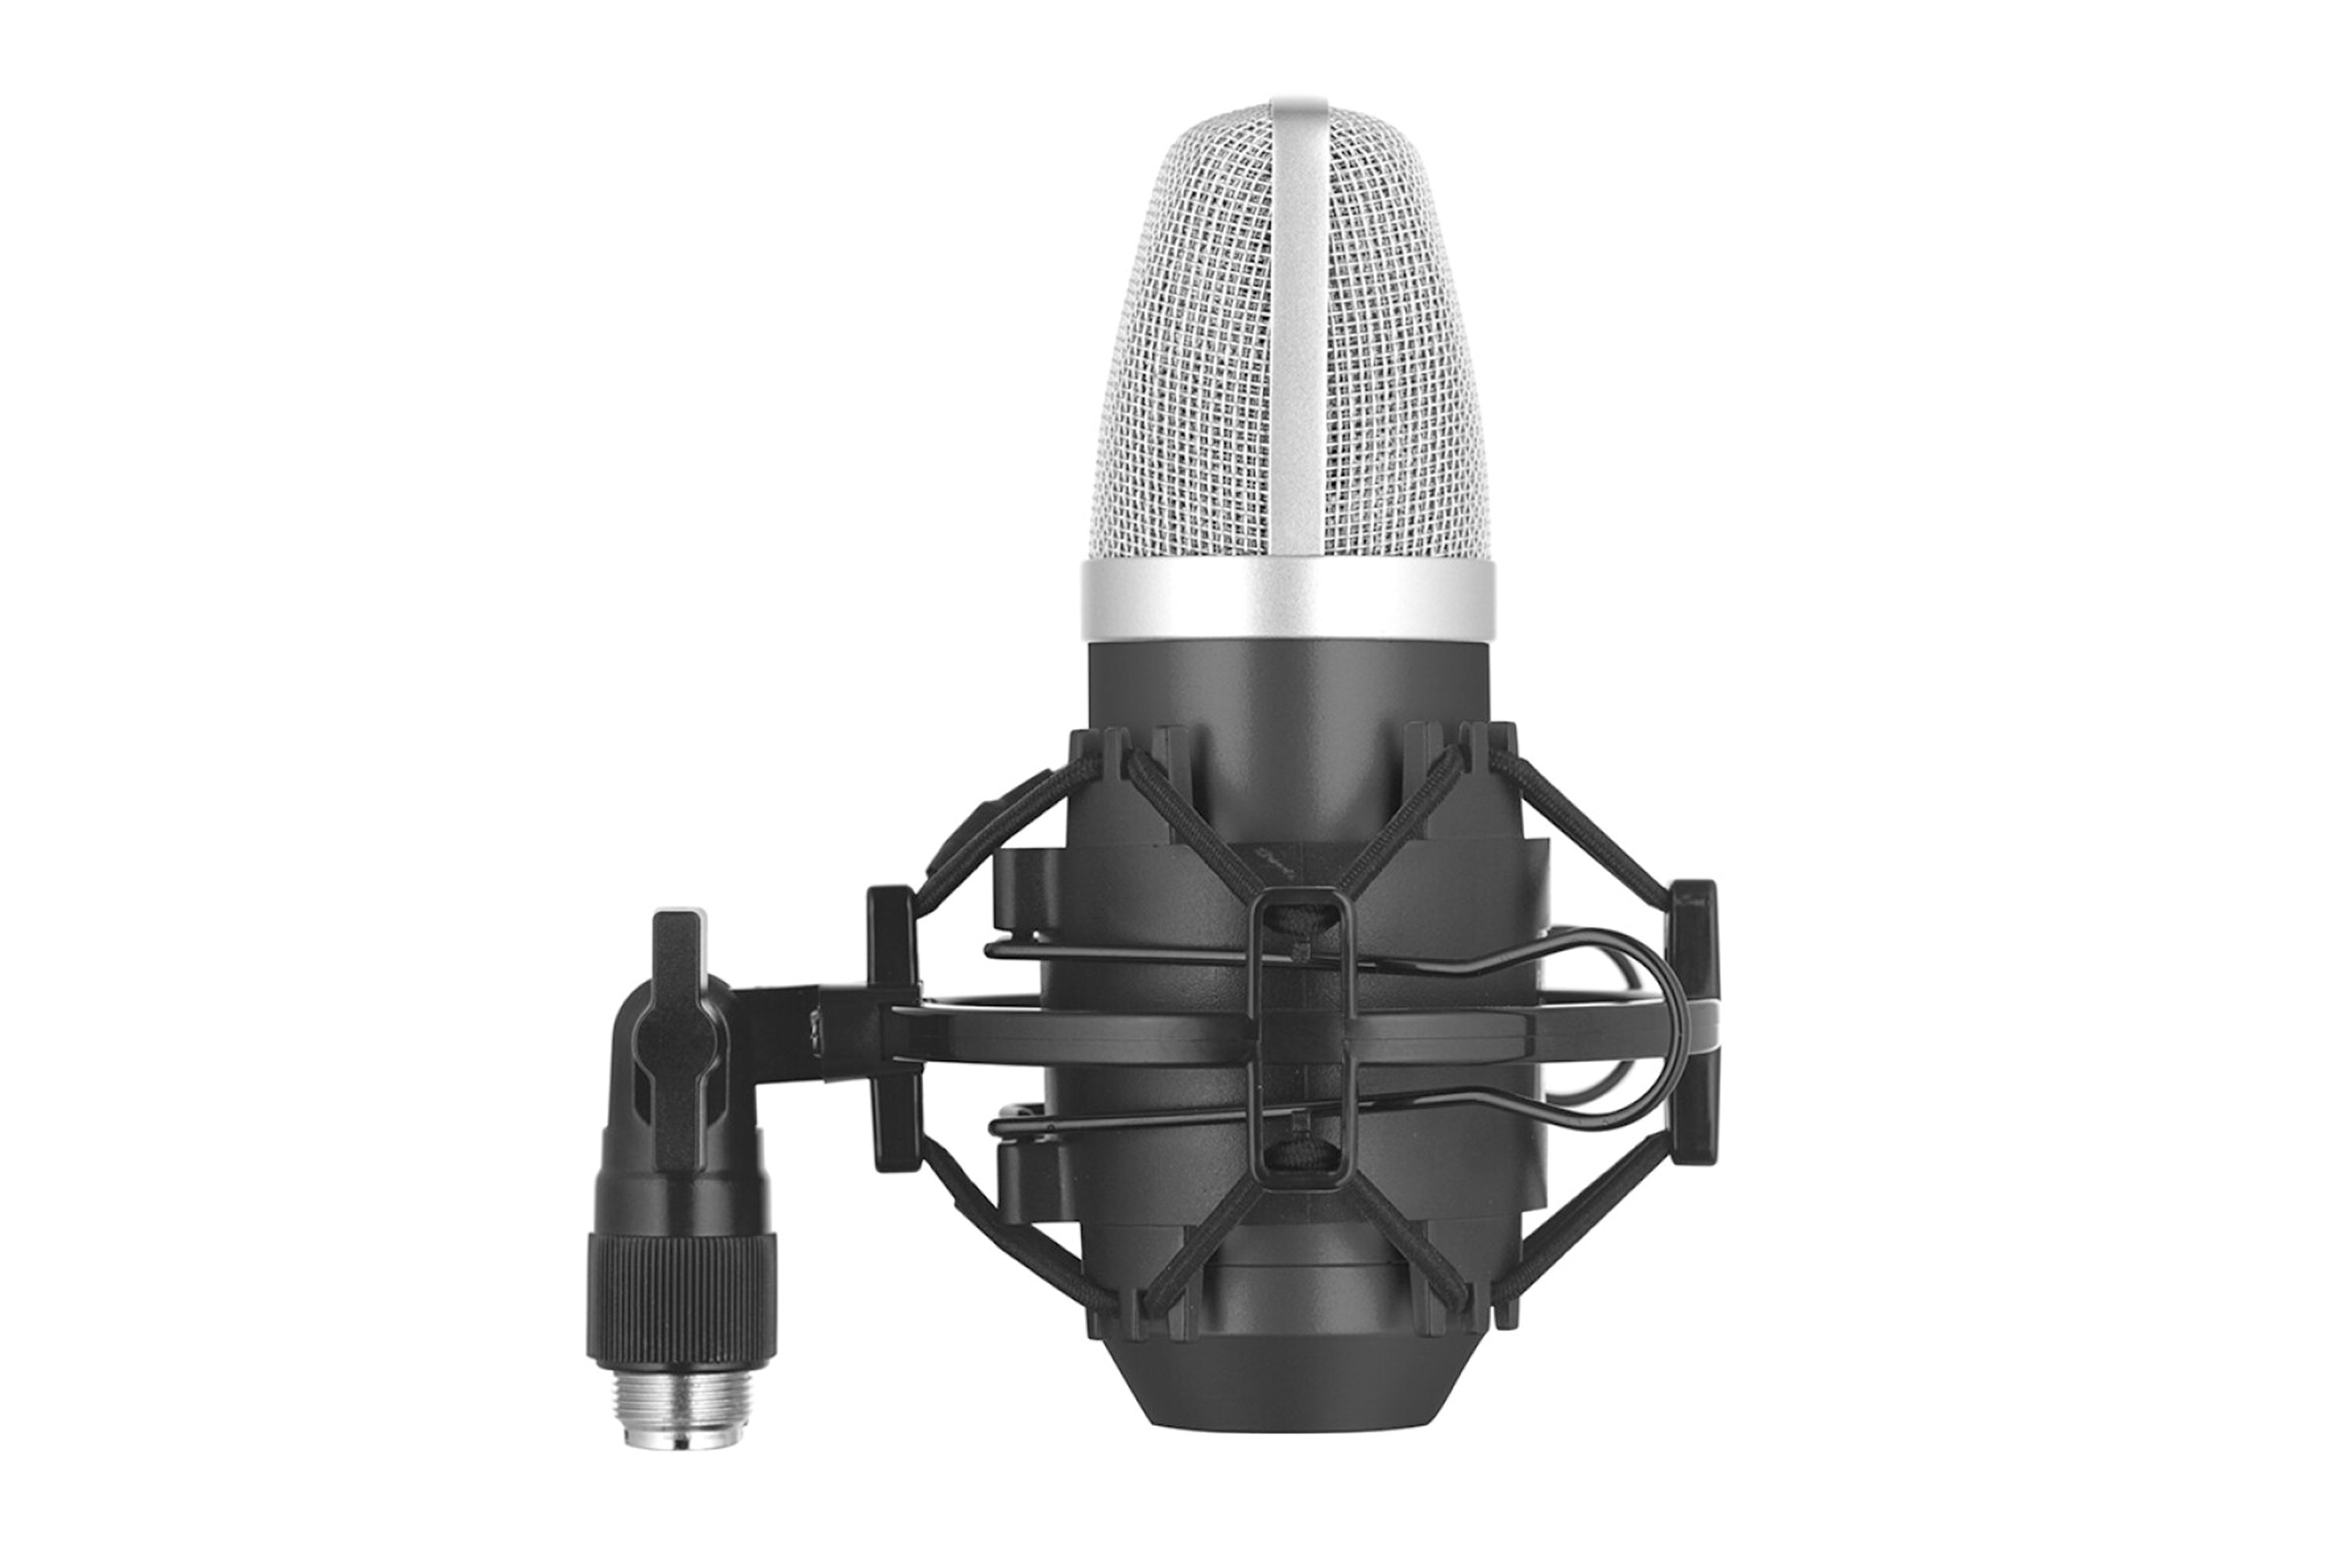 Stagg SUM40 USB Condenser Microphone